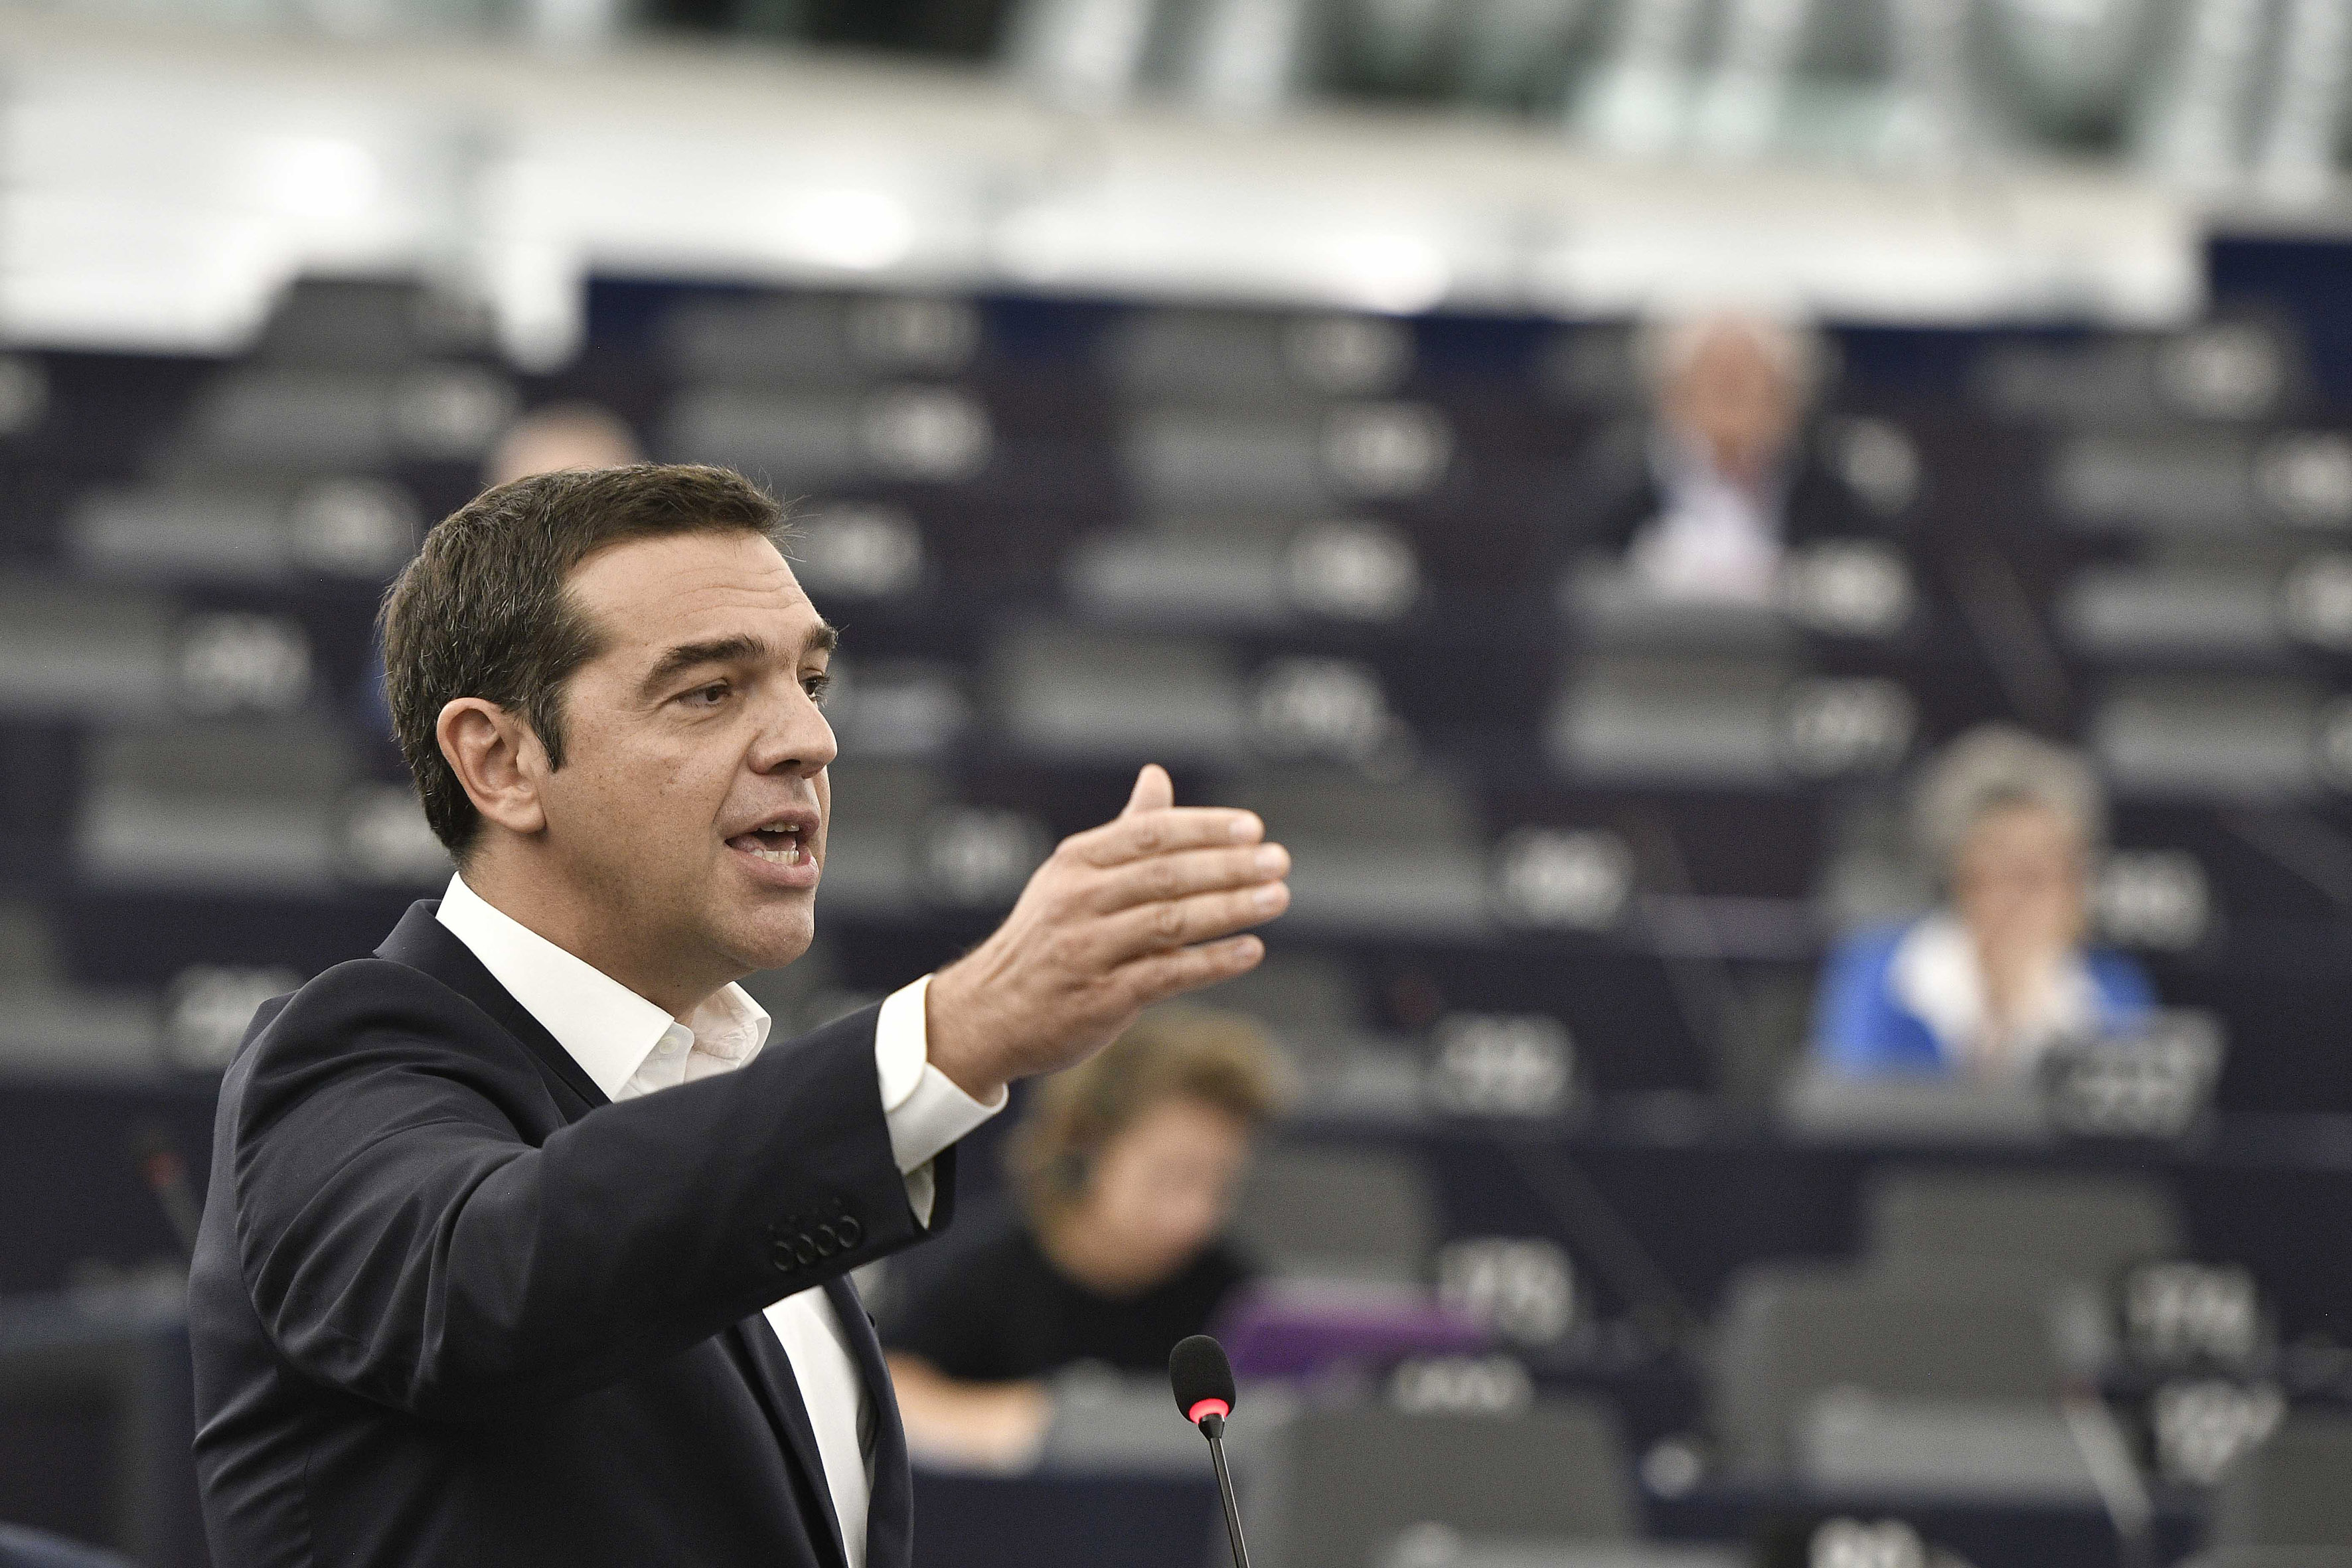 (Ξένη Δημοσίευση)  Ο πρωθυπουργός, Αλέξης Τσίπρας μιλάει στην Ολομέλεια του Ευρωπαϊκού Κοινοβουλίου στο Στρασβούργο για το μέλλον της Ευρώπης, την Τρίτη 11 Σεπτεμβρίου 2018.  ΑΠΕ-ΜΠΕ/ΓΡΑΦΕΙΟ ΤΥΠΟΥ ΠΡΩΘΥΠΟΥΡΓΟΥ/Andrea Bonetti